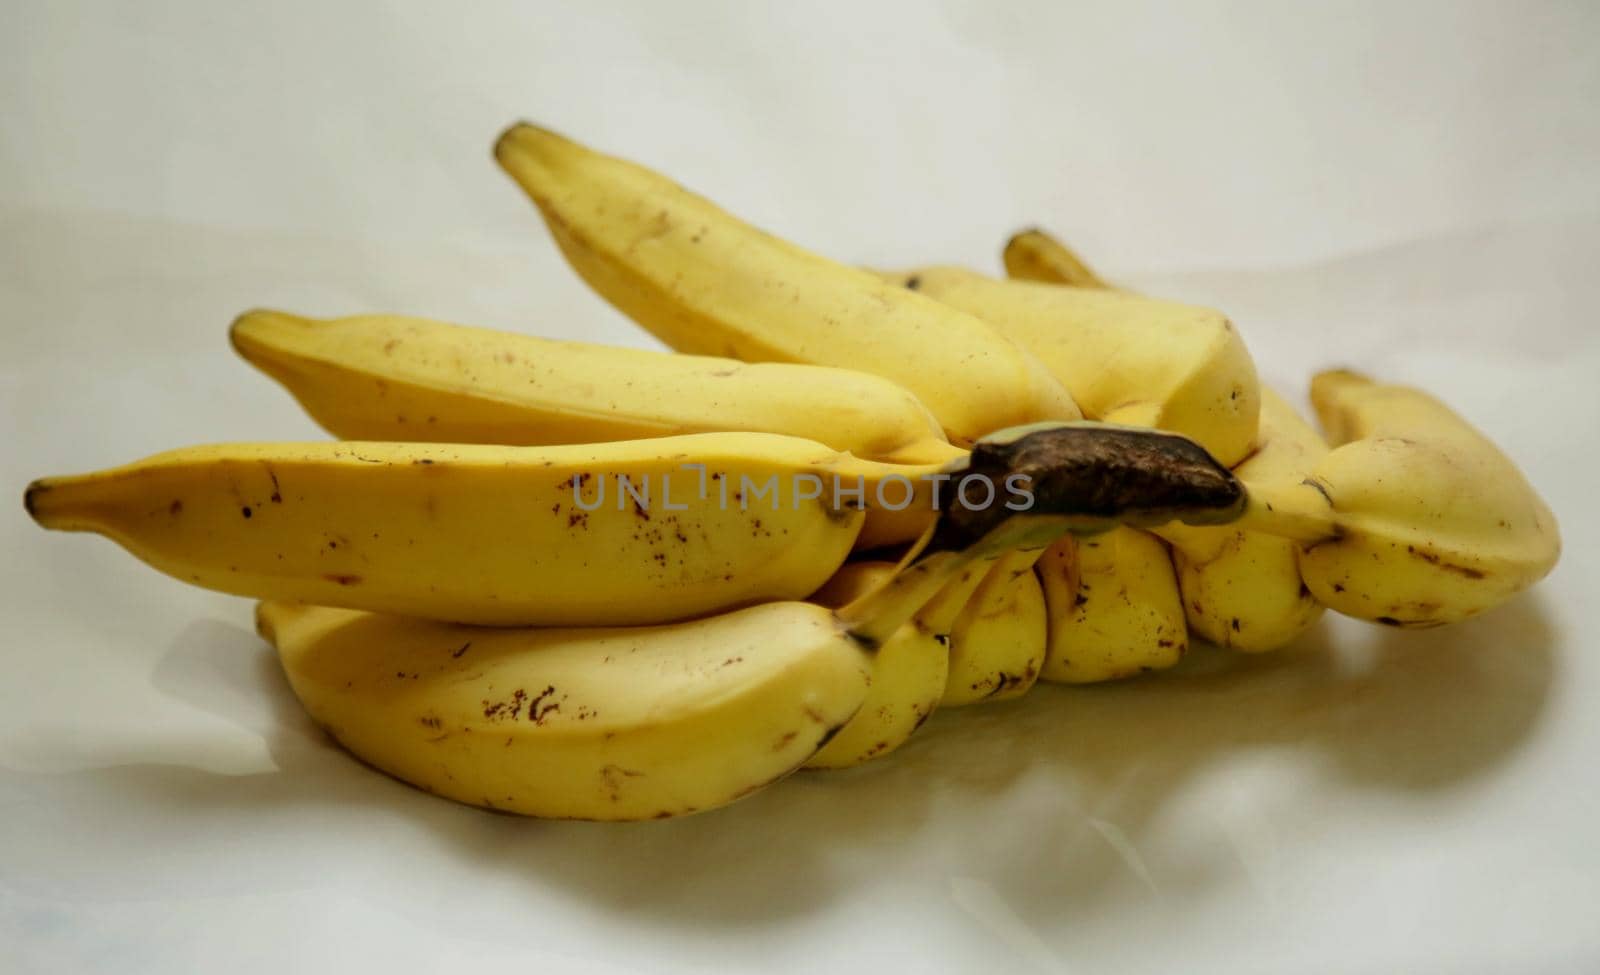 bunch of bananas by joasouza